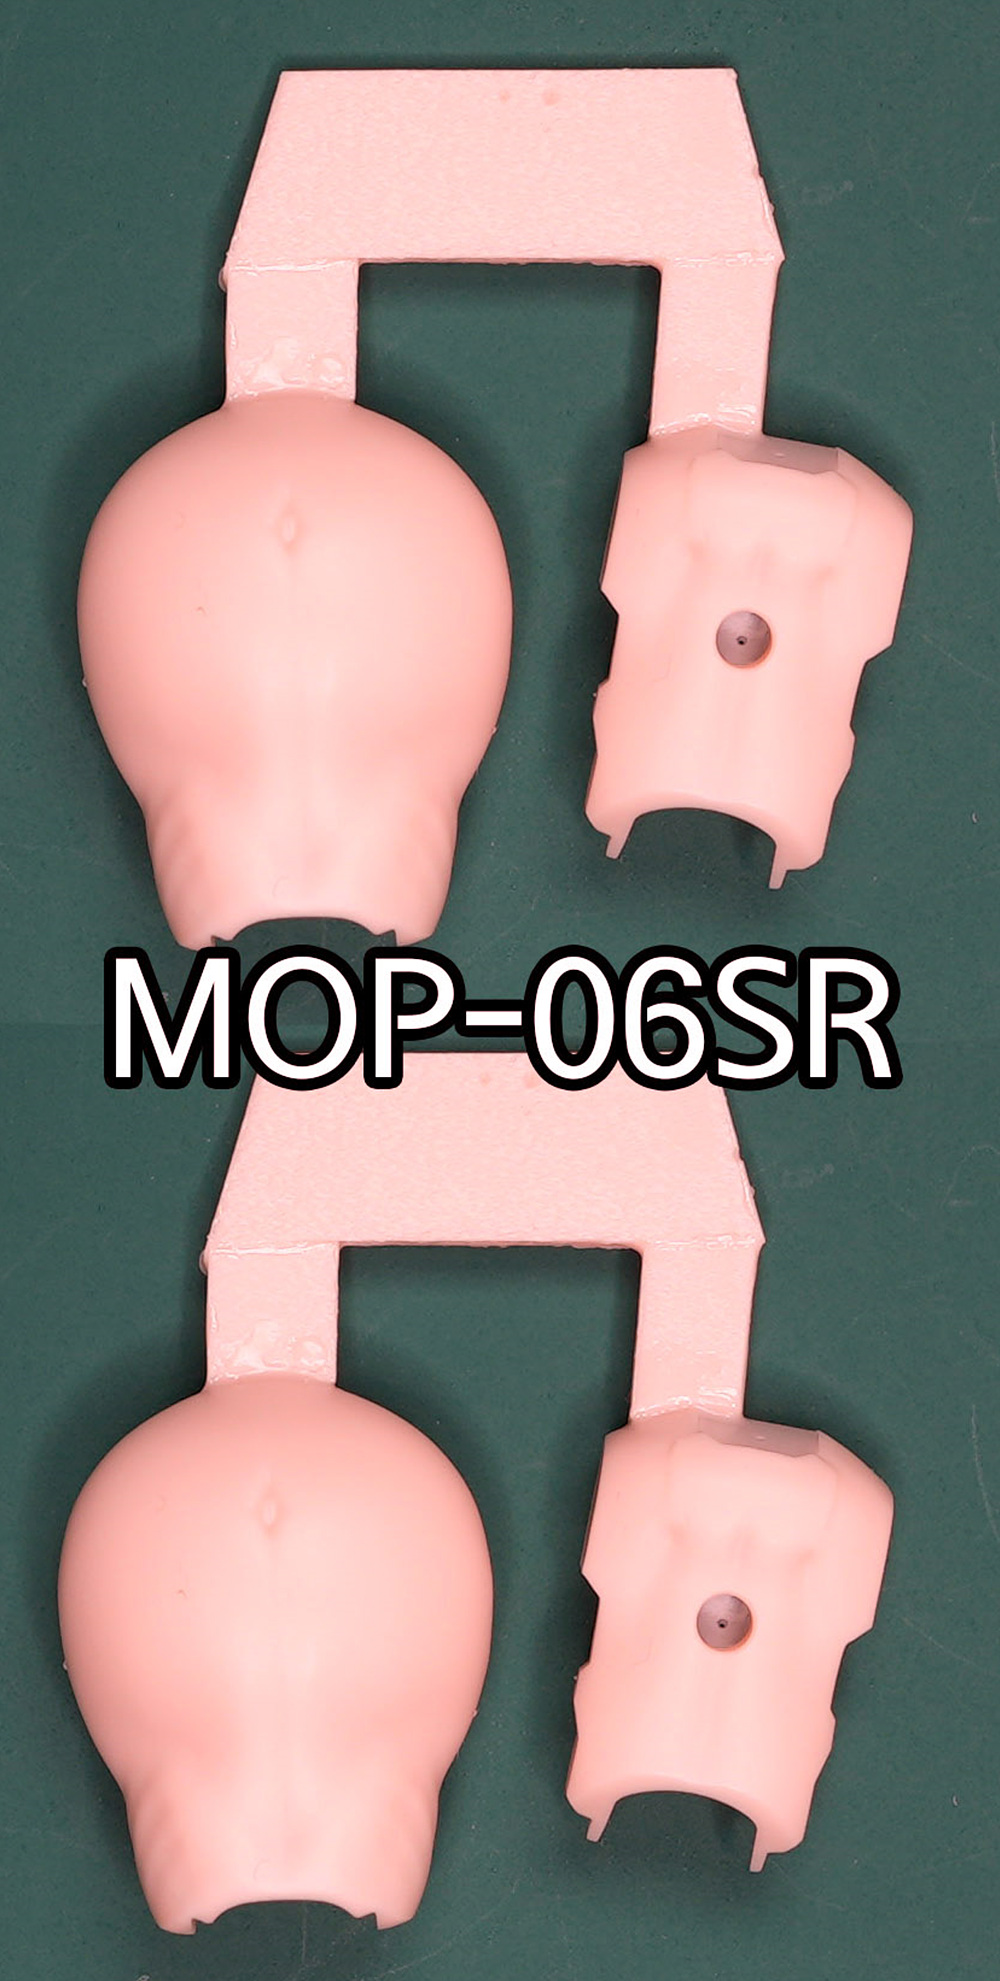 MOP-06SR.jpg